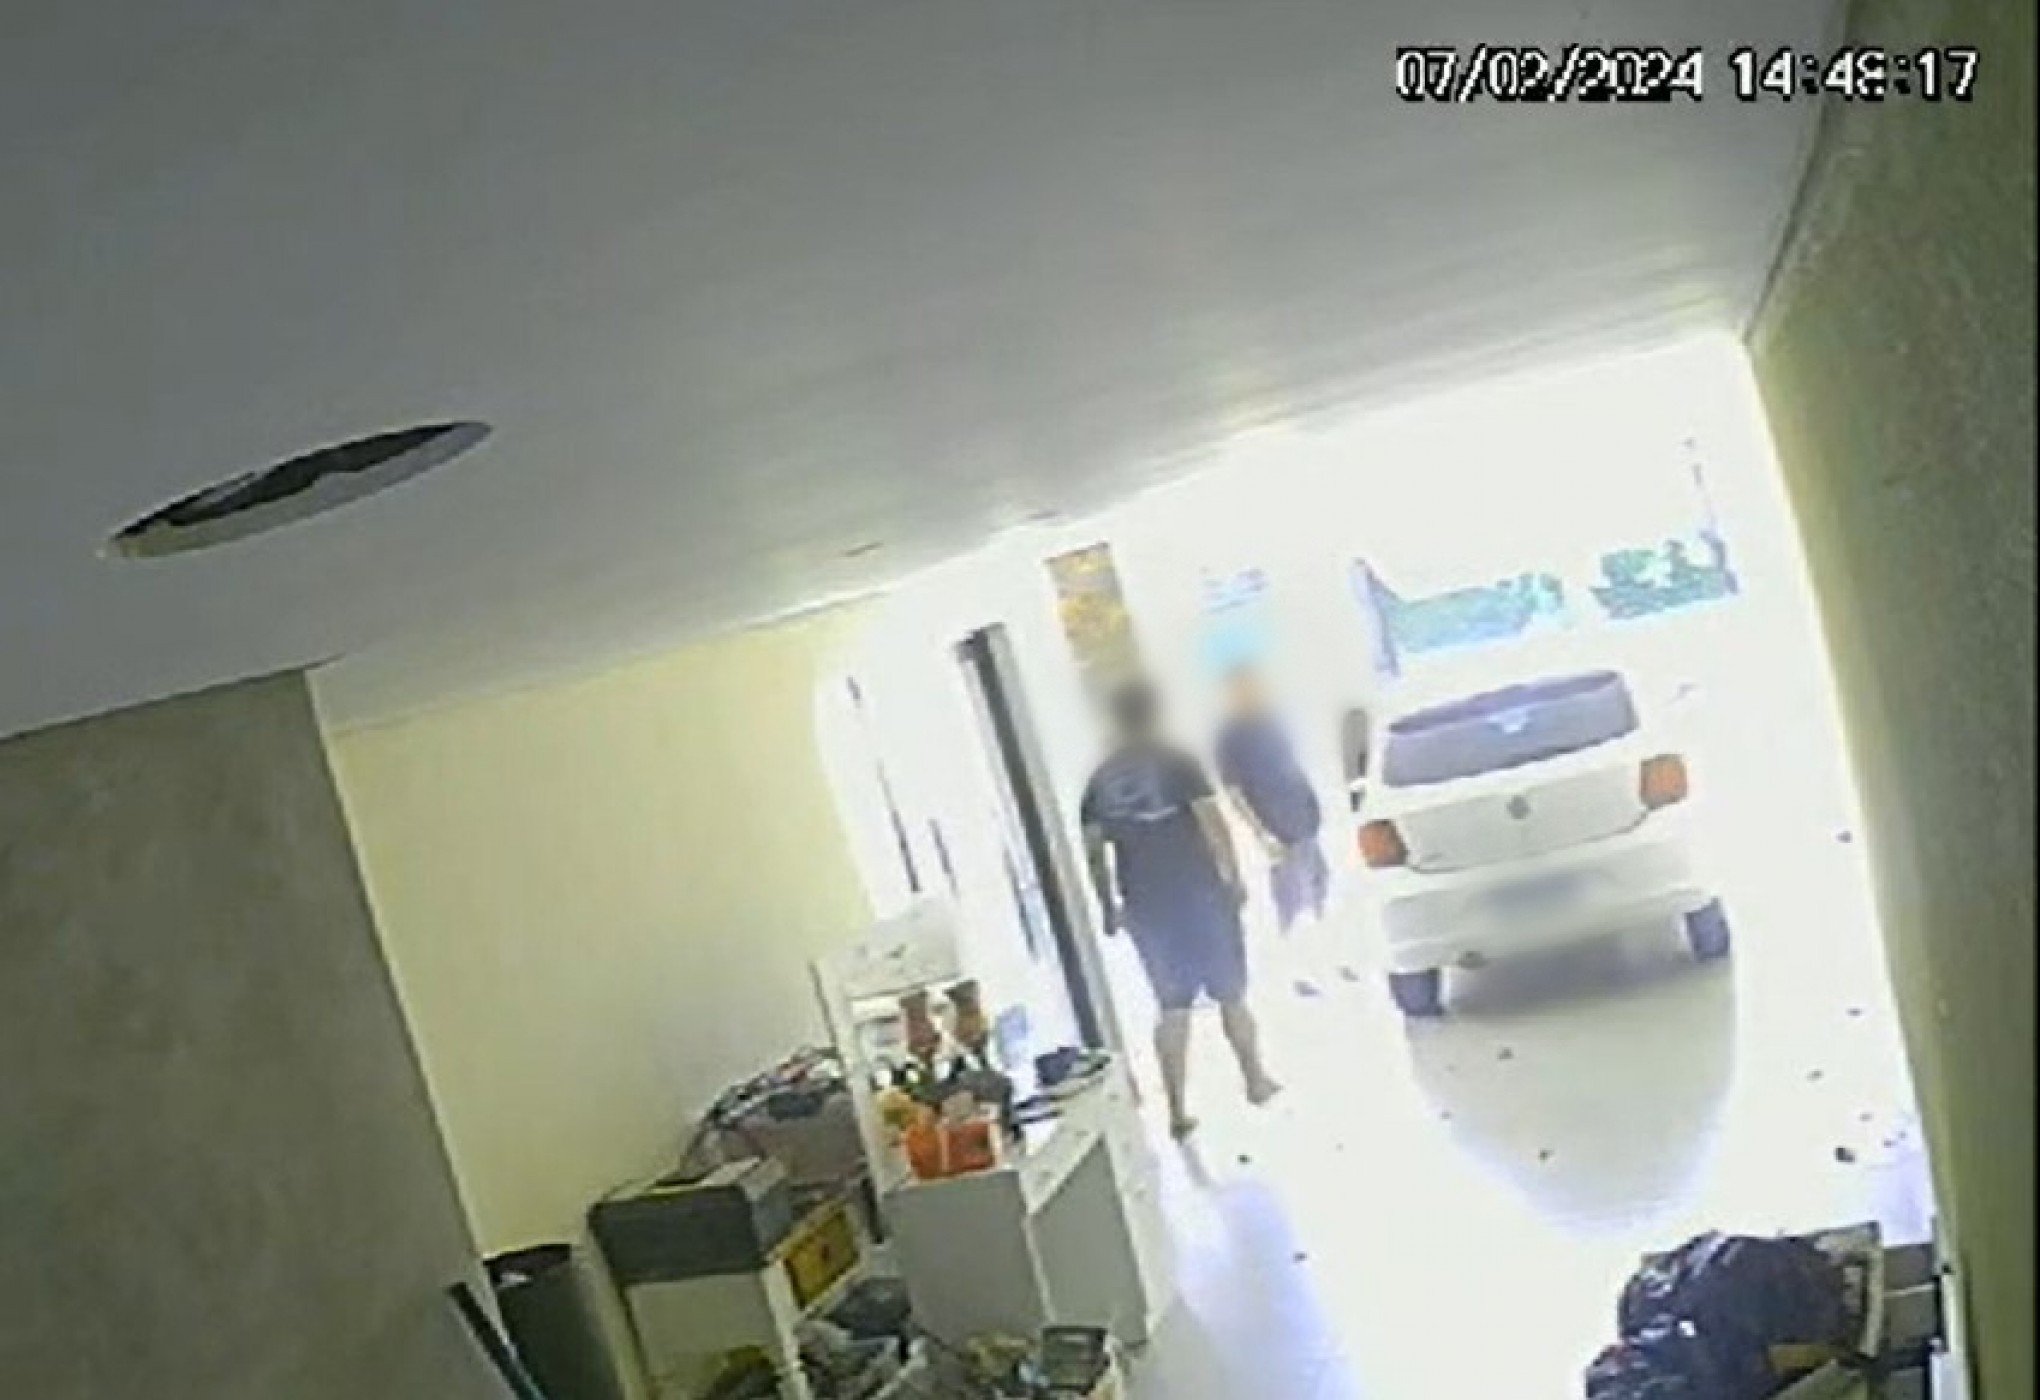 VÍDEO: Homem invade casa e é surpreendido por morador; criminoso estava em prisão domiciliar